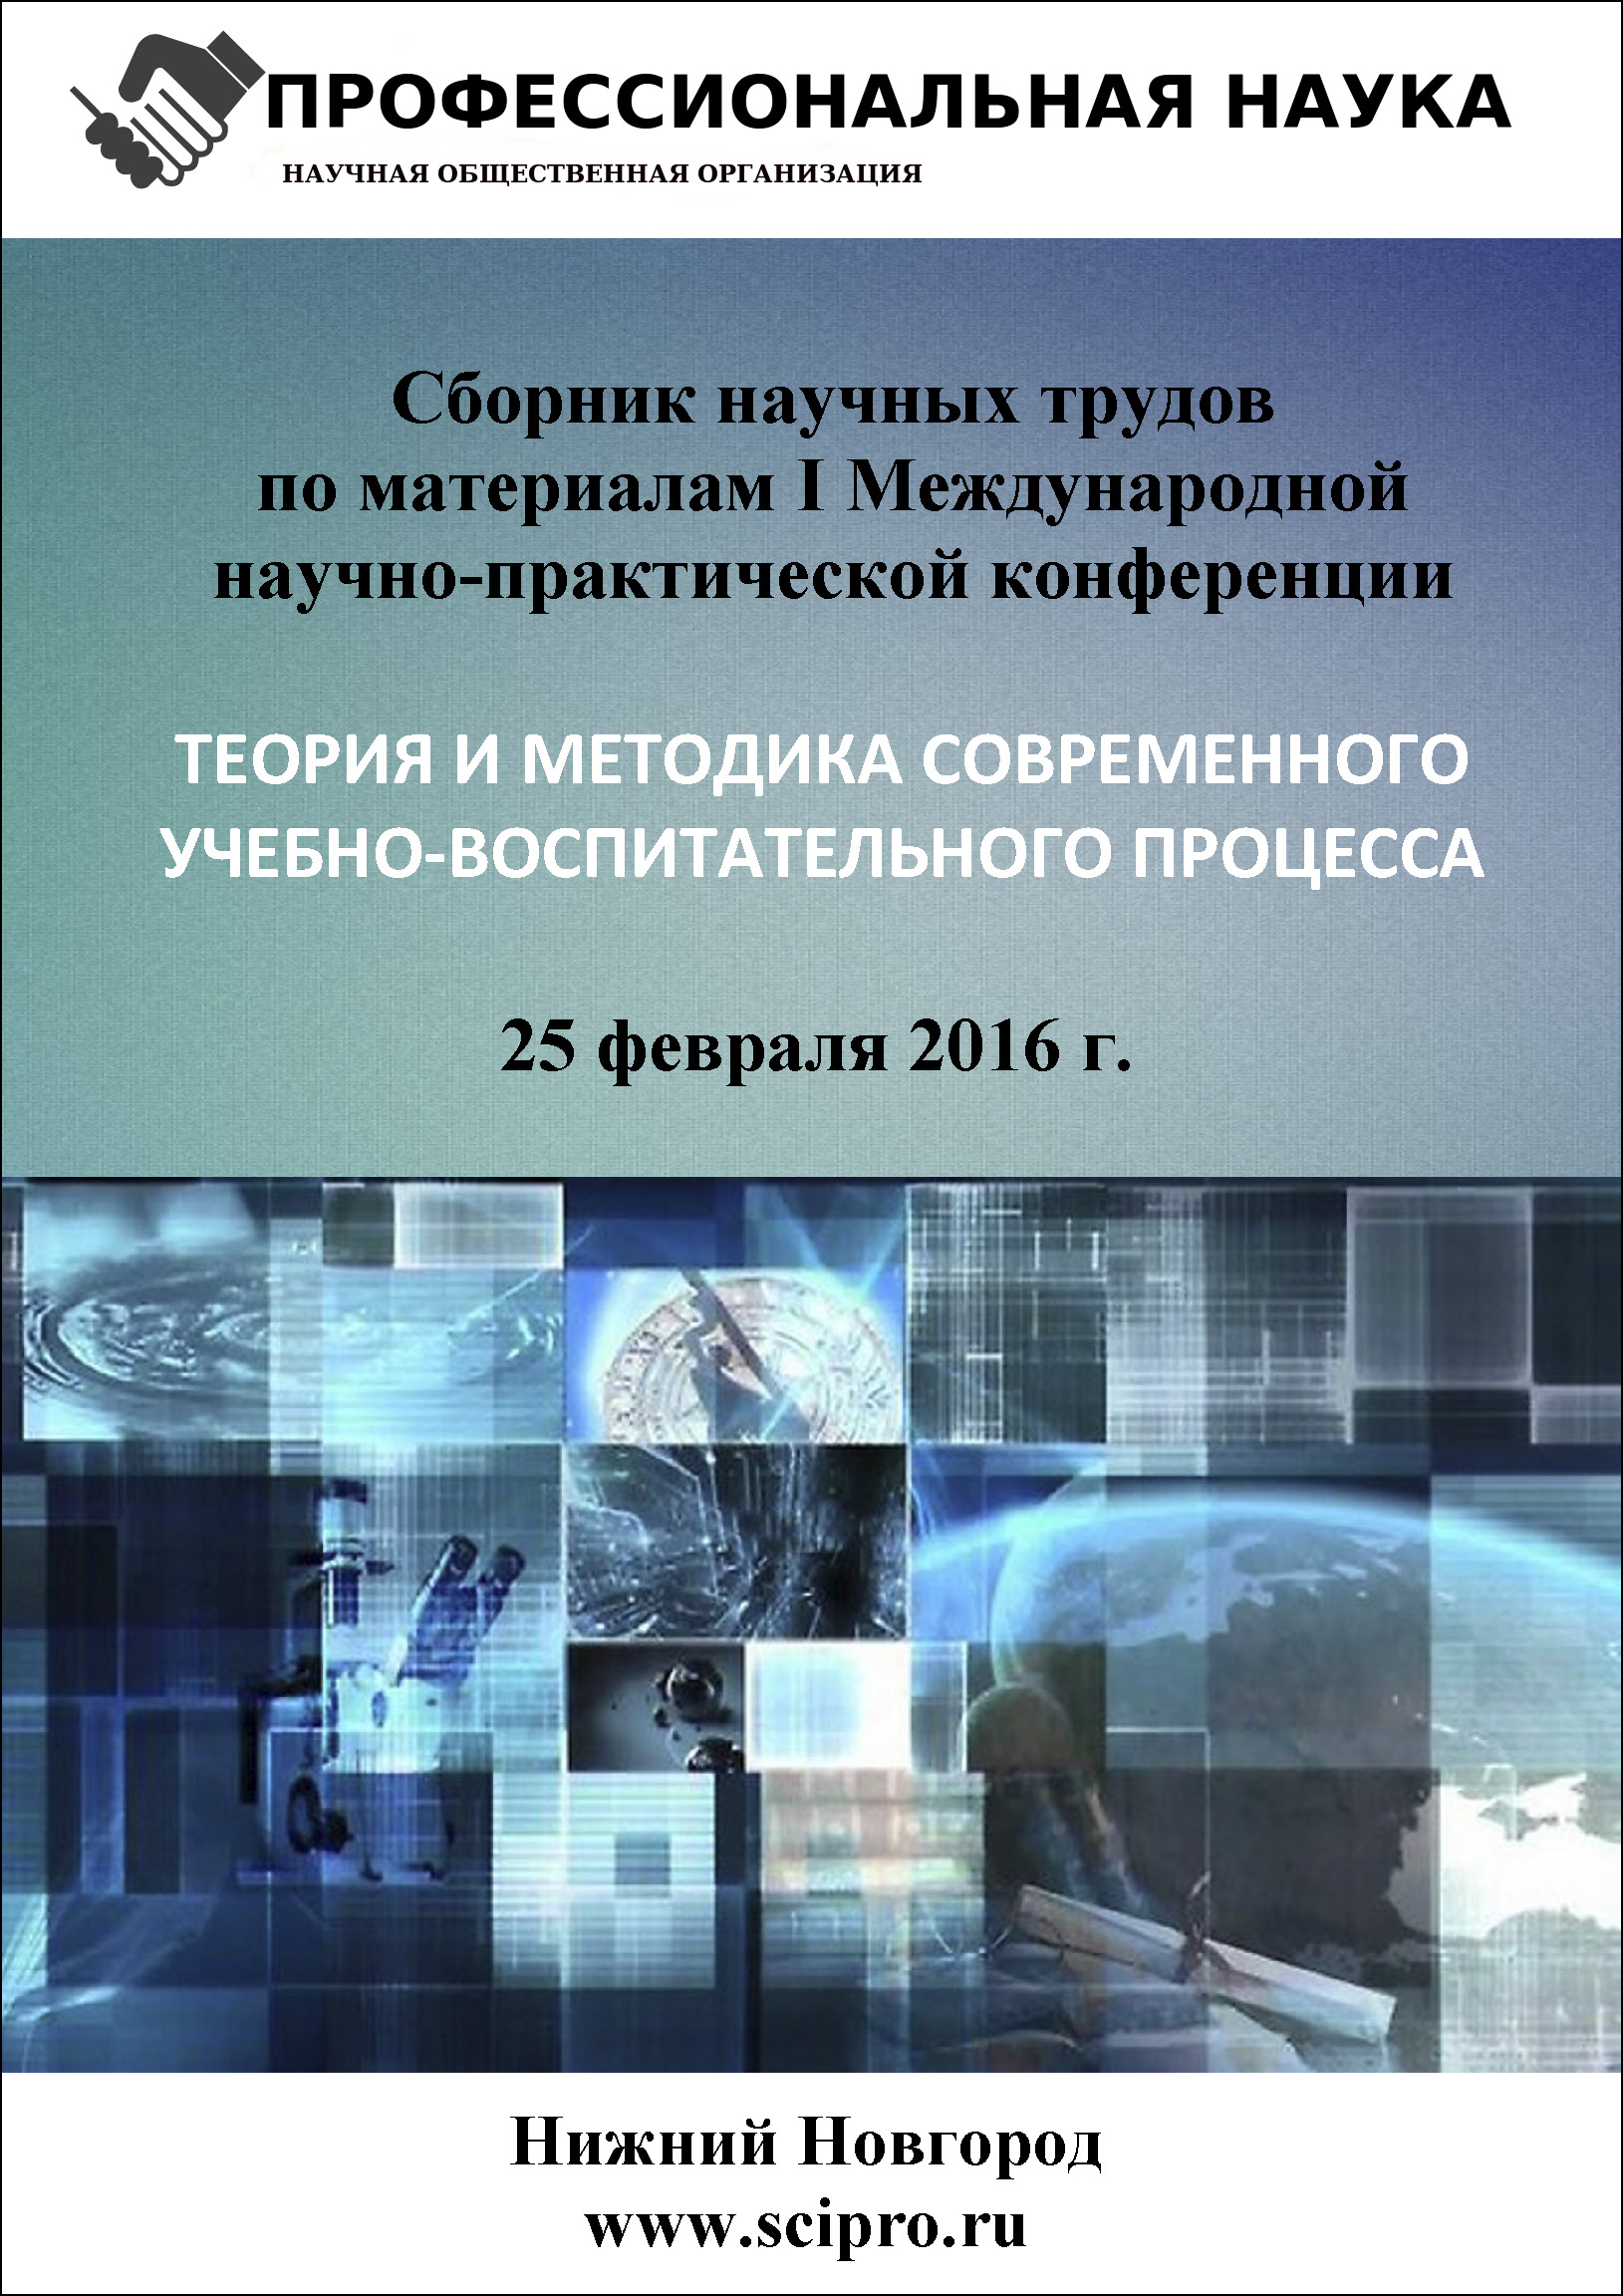 Международная научно-практическая конференция “Теория и методика современного учебно-воспитательного процесса”